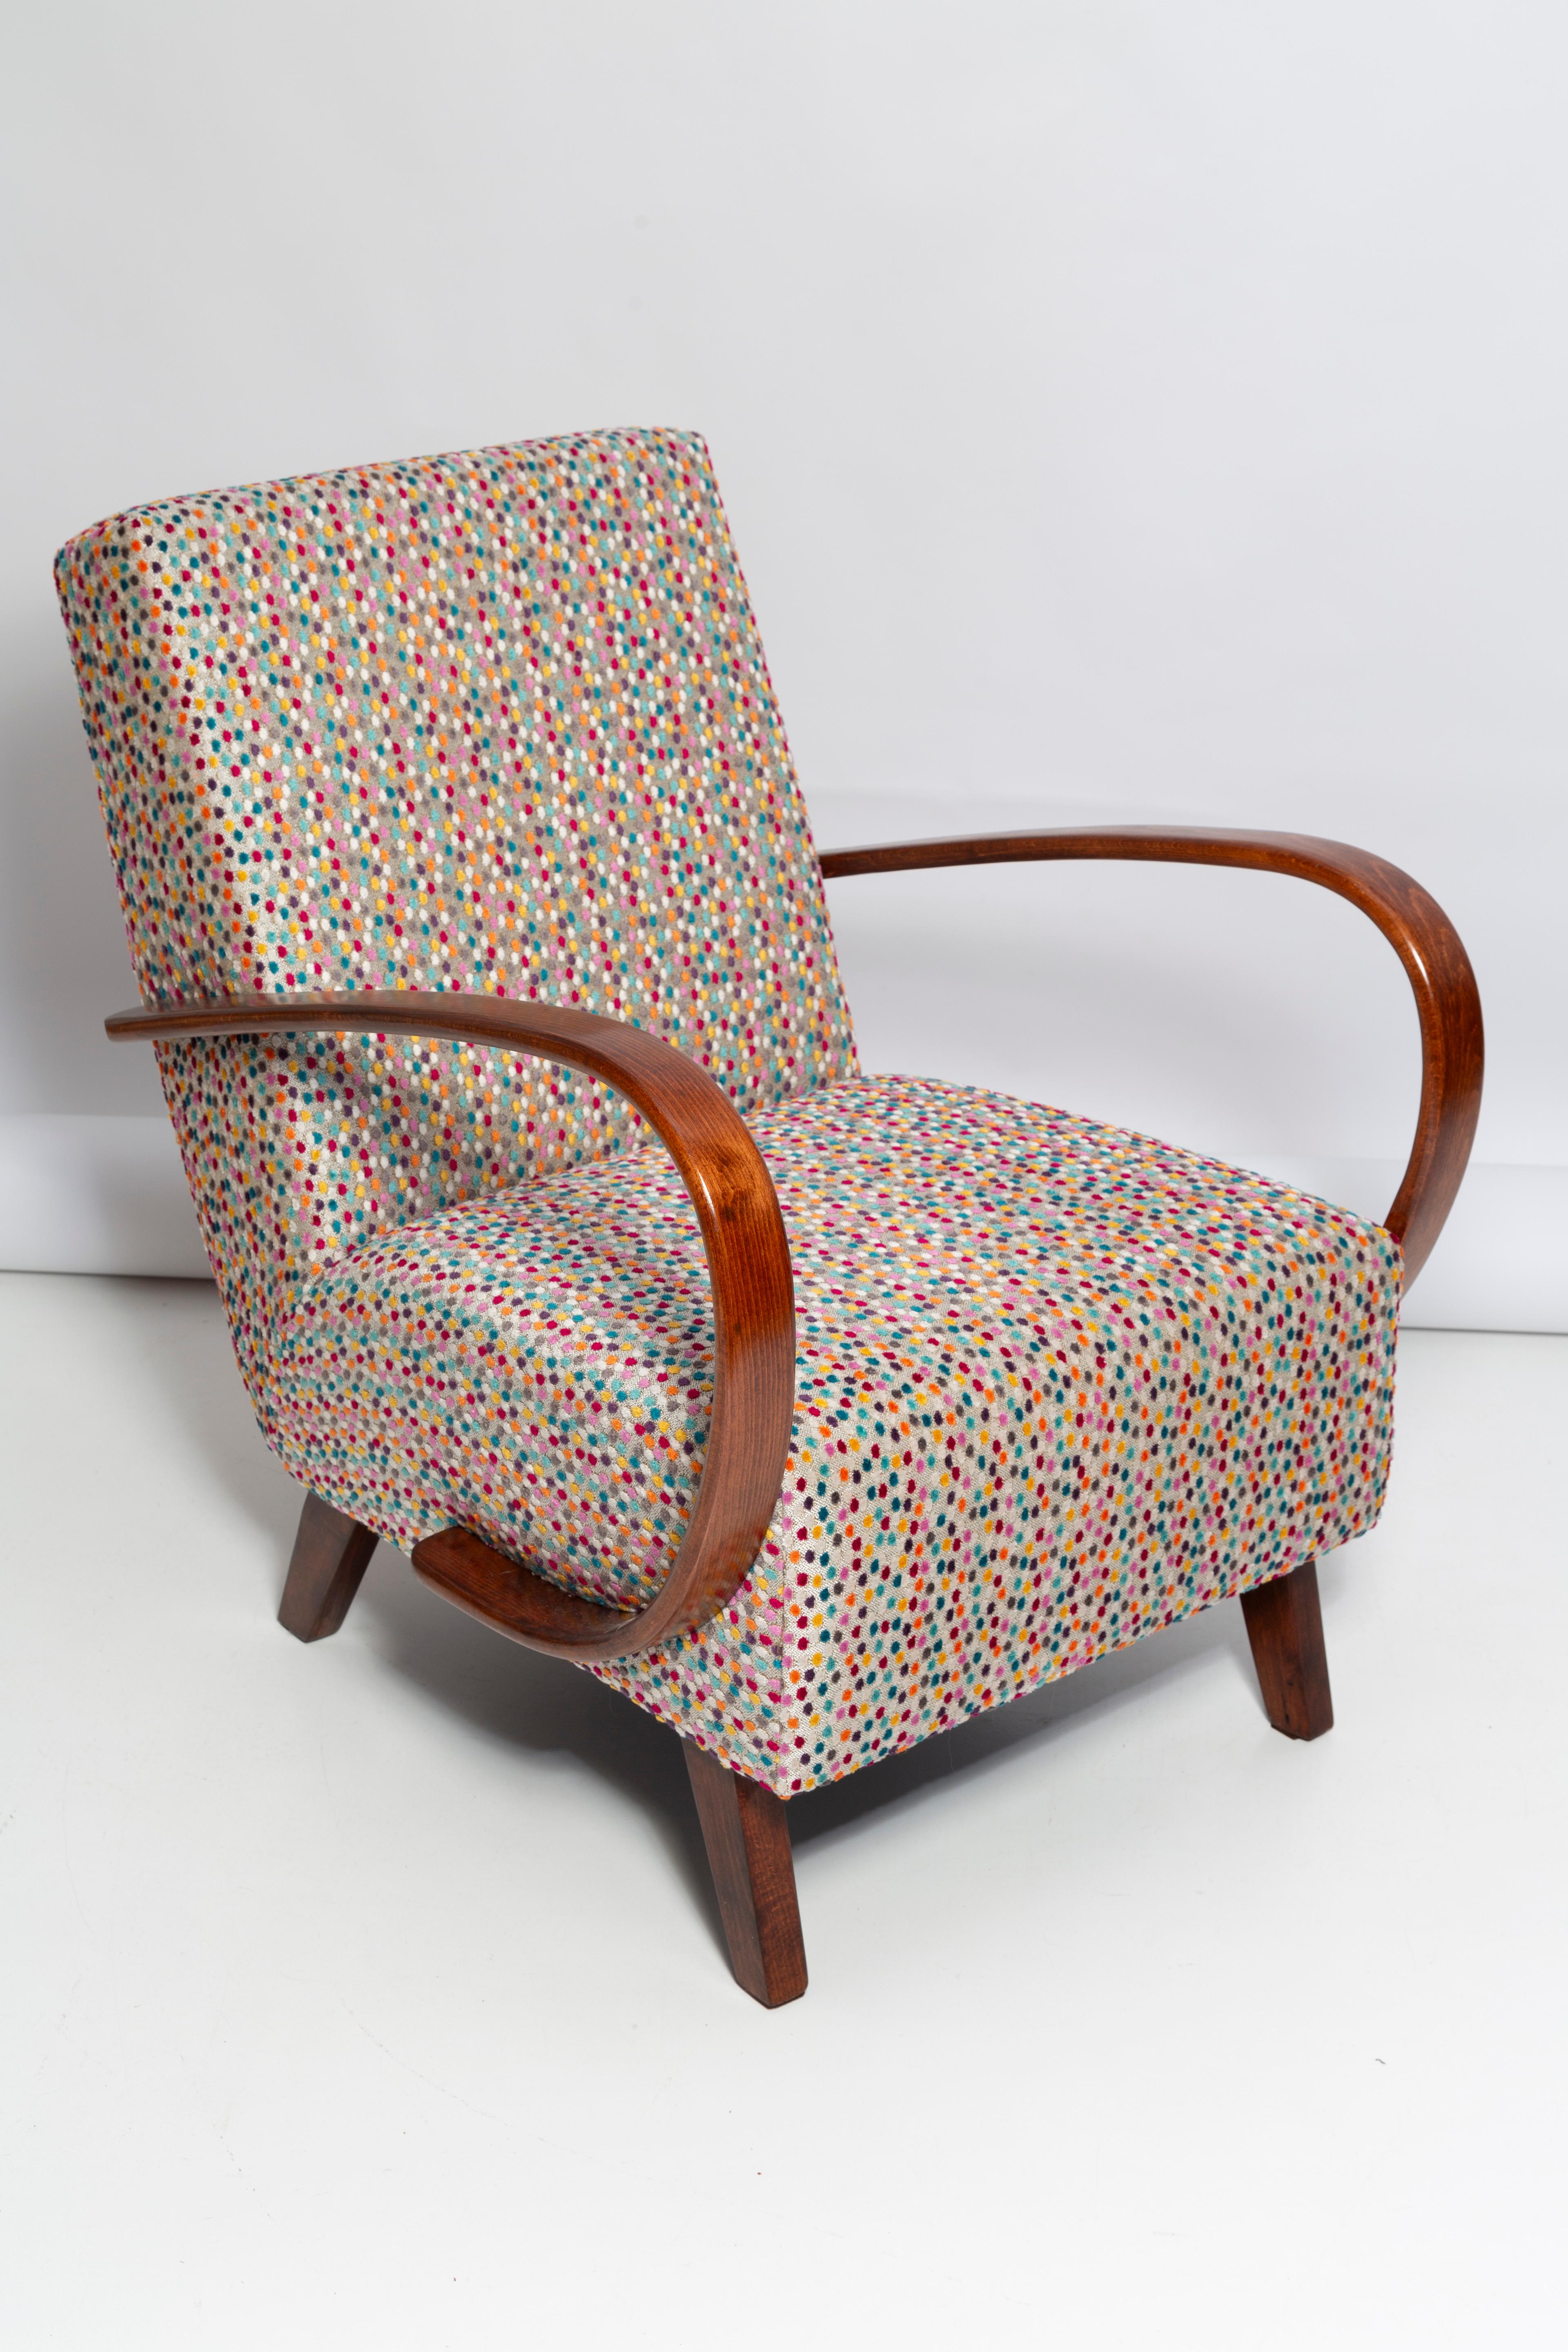 Sehr origineller und klassischer Sessel, hergestellt in der Tschechischen Republik vom Möbeldesigner J. Halabala. Die auffällige Silhouette und das bequeme Design aus den 1950er Jahren haben einen bleibenden Reiz. Ein tief gepolsterter Sitz auf